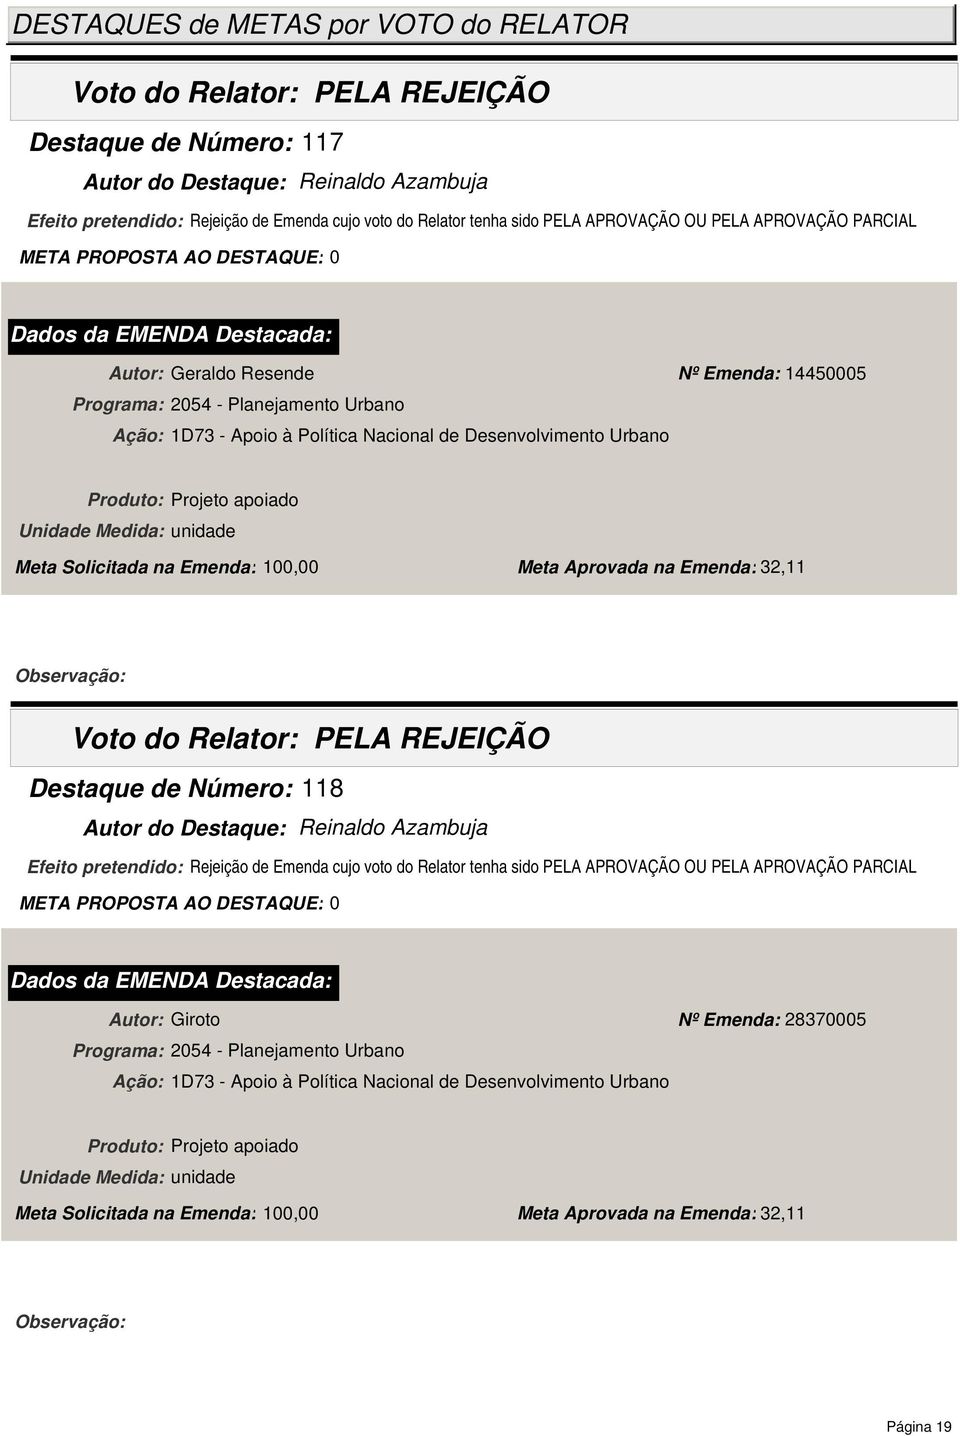 Emenda: 32,11 Destaque de Número: 118 Autor do Destaque: Reinaldo Azambuja Efeito pretendido: Rejeição de Emenda cujo voto do Relator tenha sido PELA APROVAÇÃO OU PELA APROVAÇÃO PARCIAL Autor: Giroto